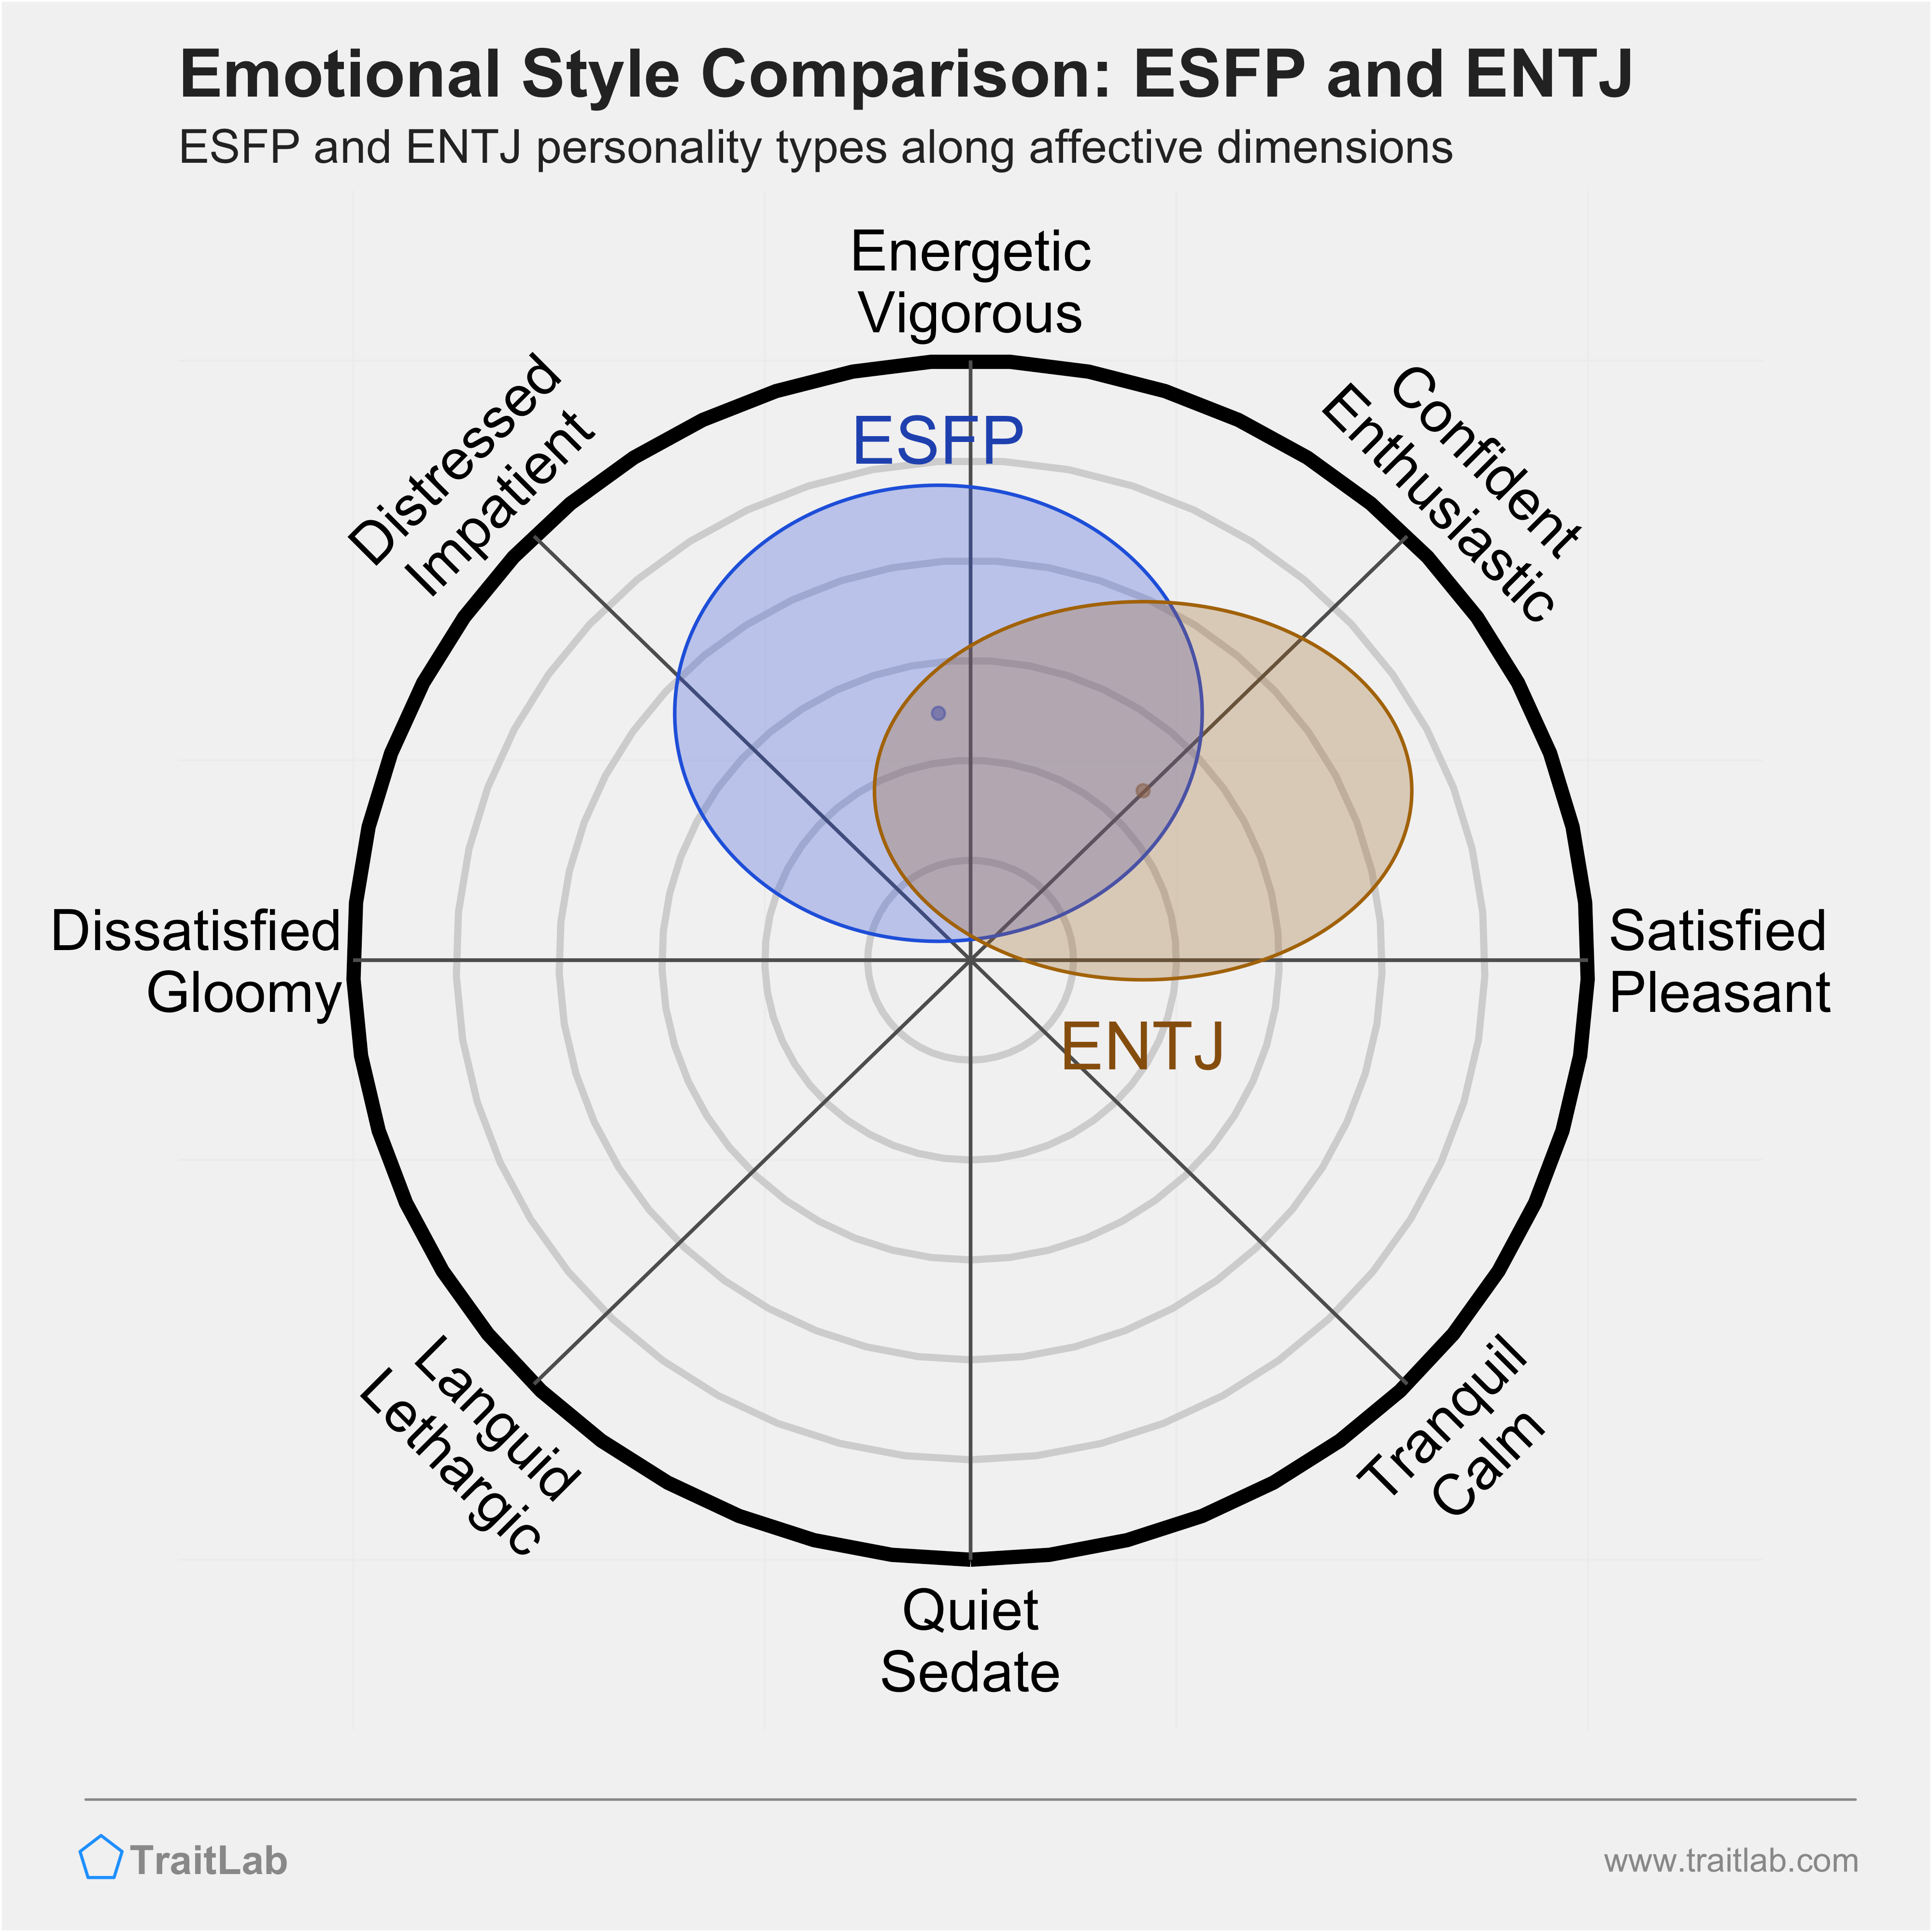 ESFP and ENTJ comparison across emotional (affective) dimensions